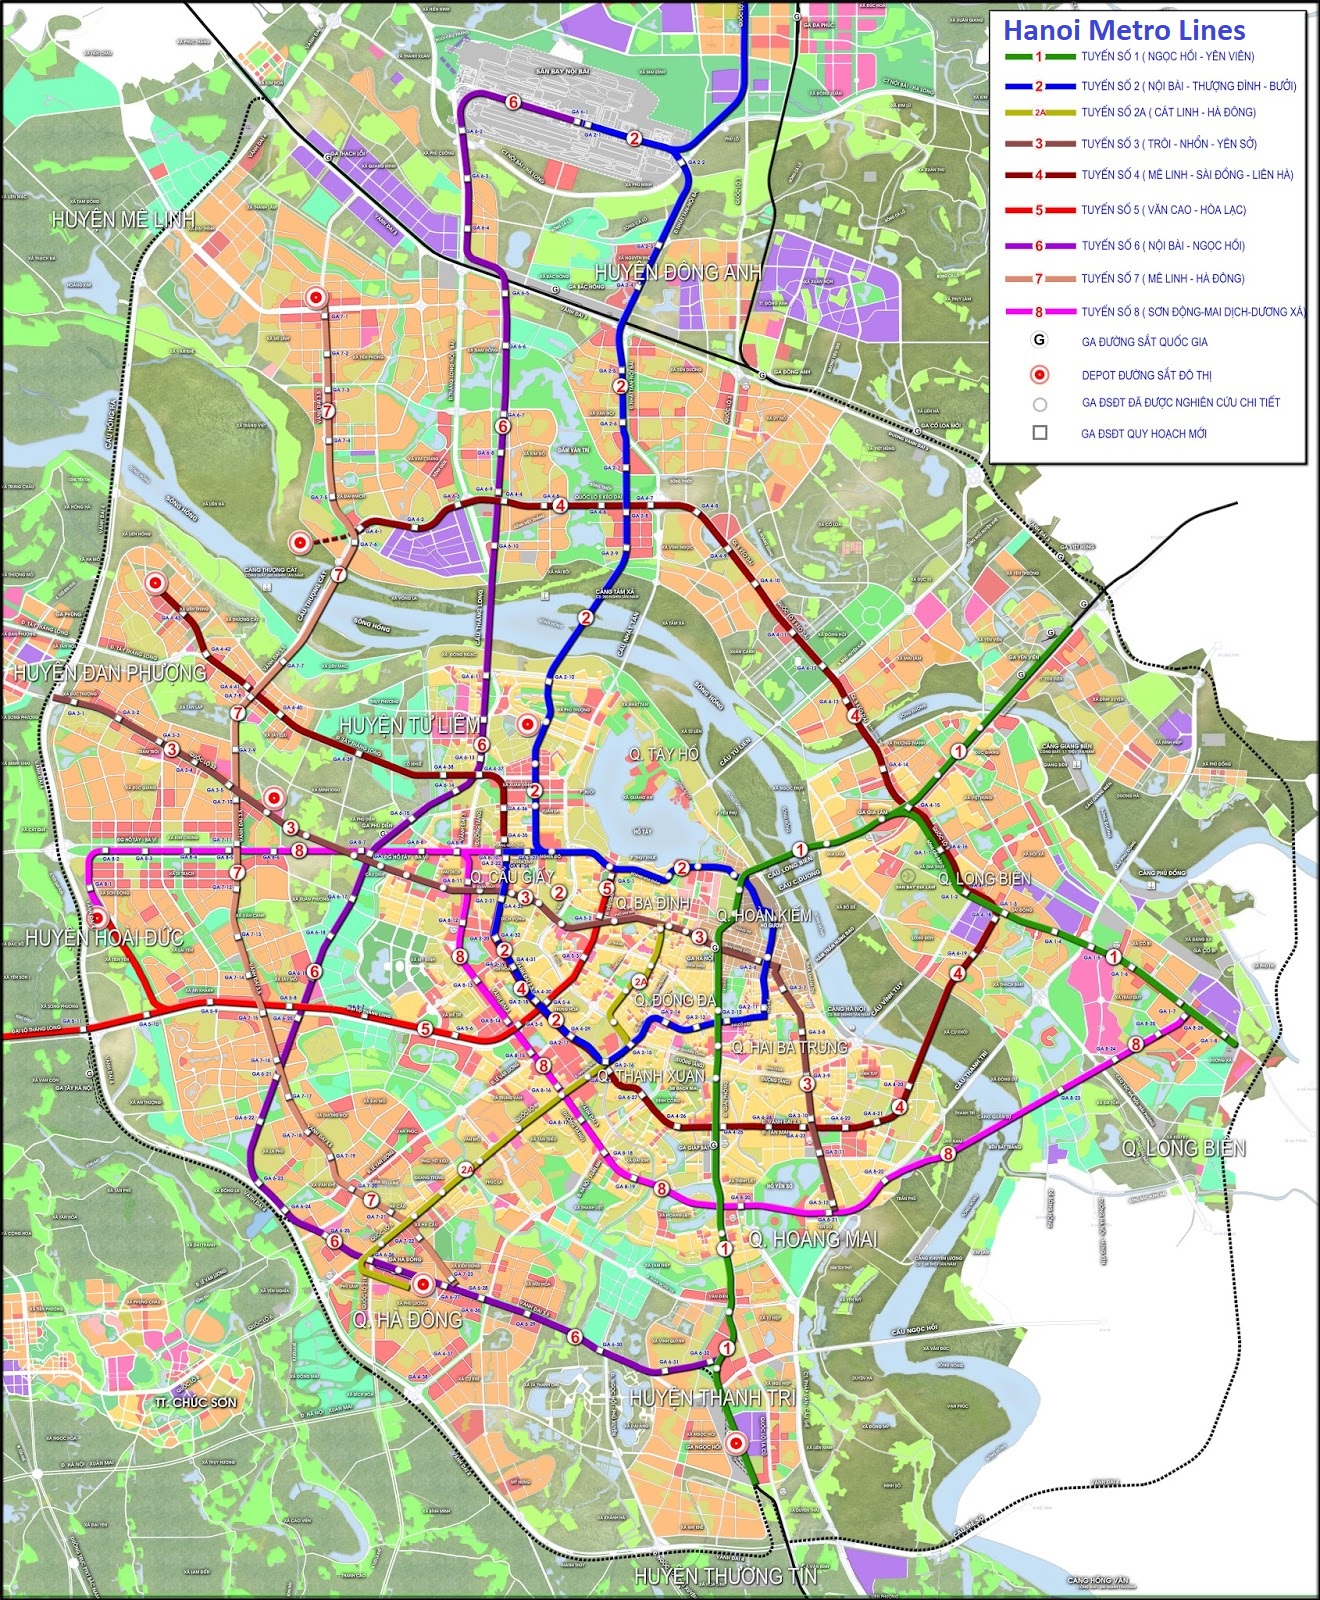 Hanoi Metro Lines